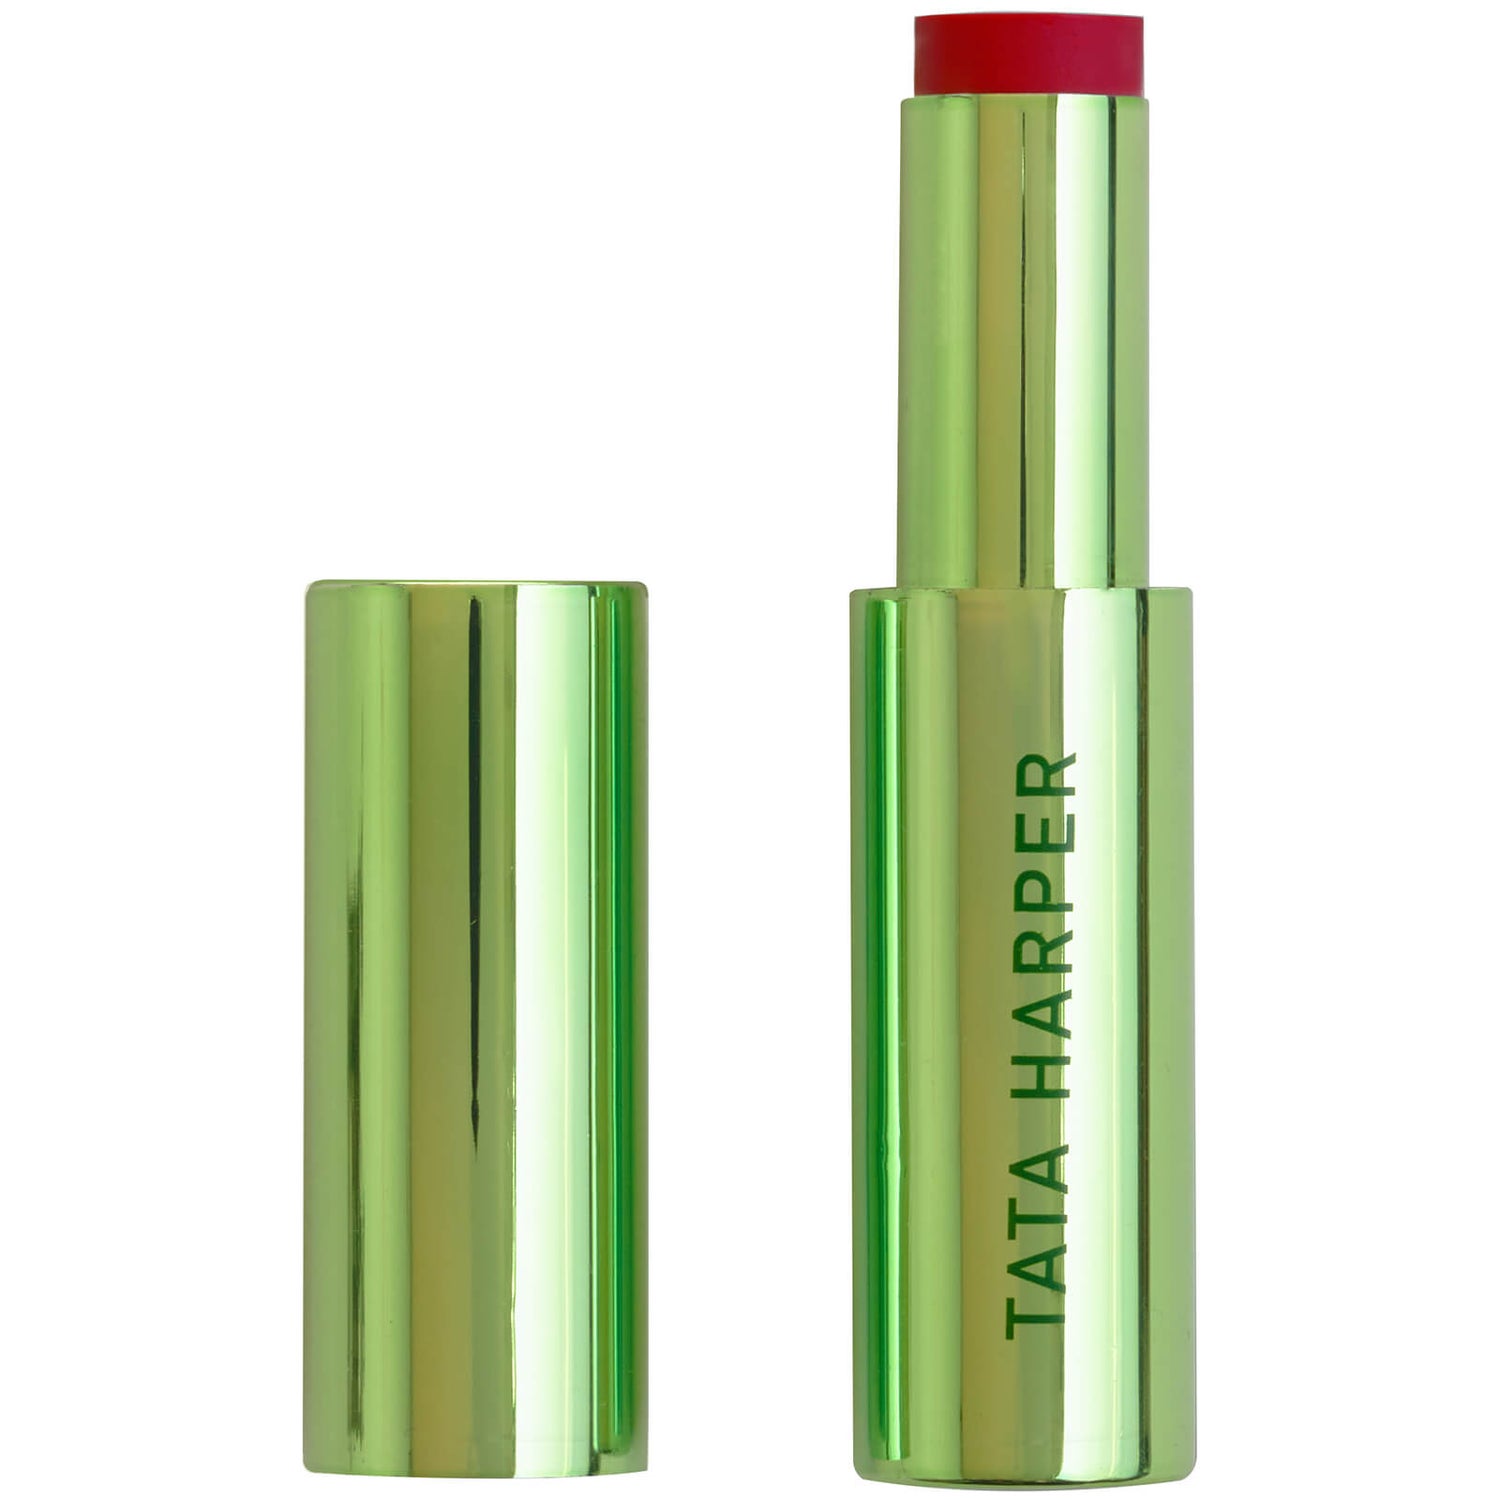 Tata Harper Lip Crème 2.5g (Various Shades)